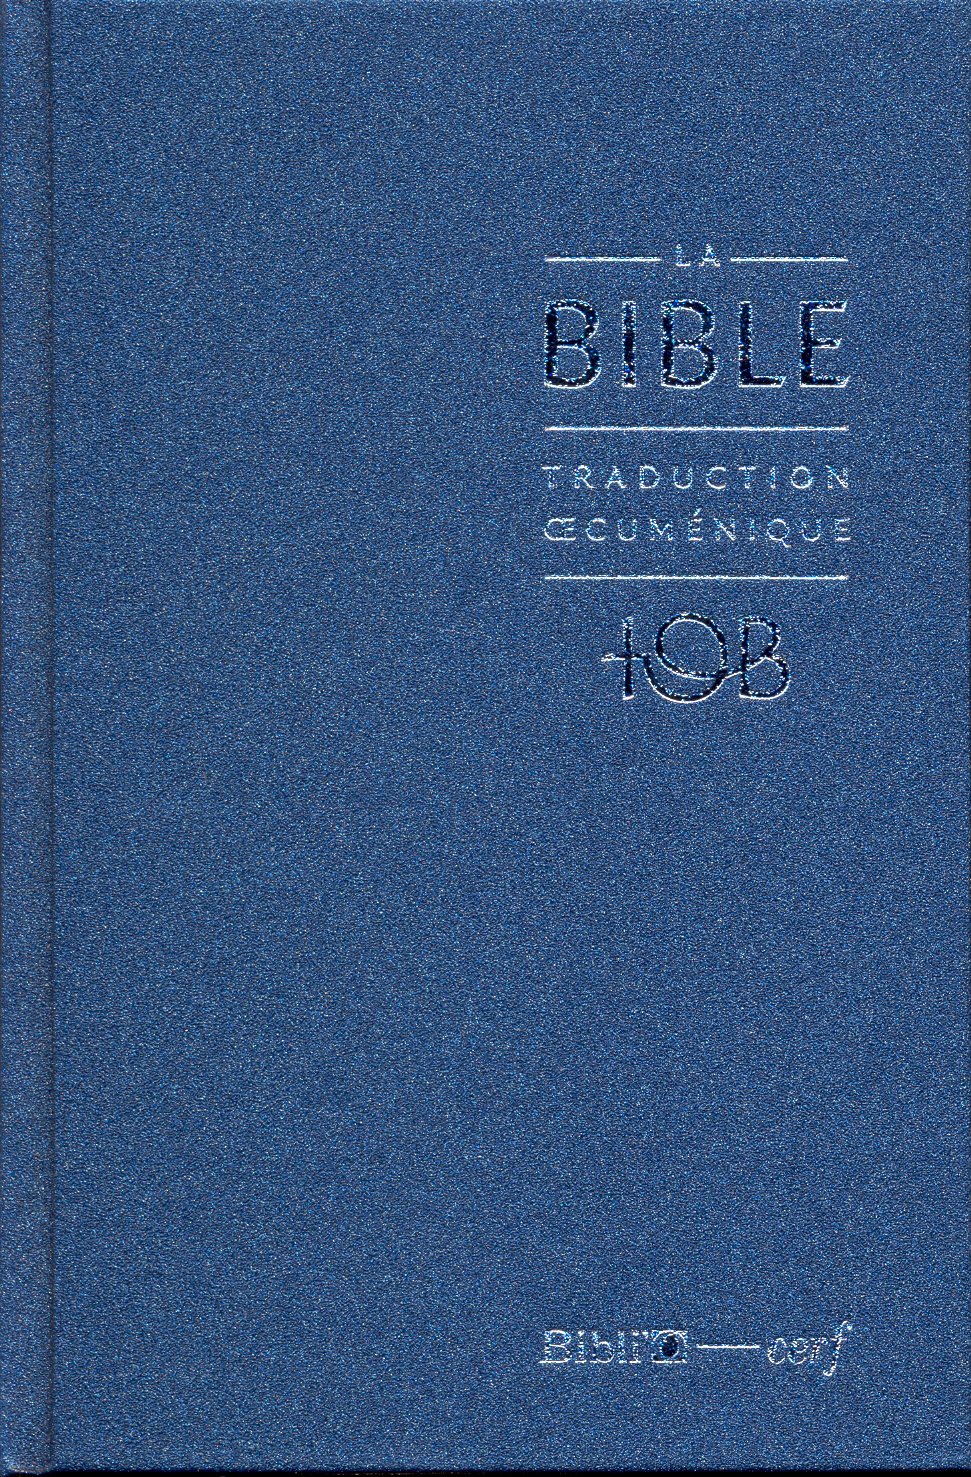 BIBLE TOB NOTES ESSENTIELLES BALACRON BLEU NUIT NELLE EDITION